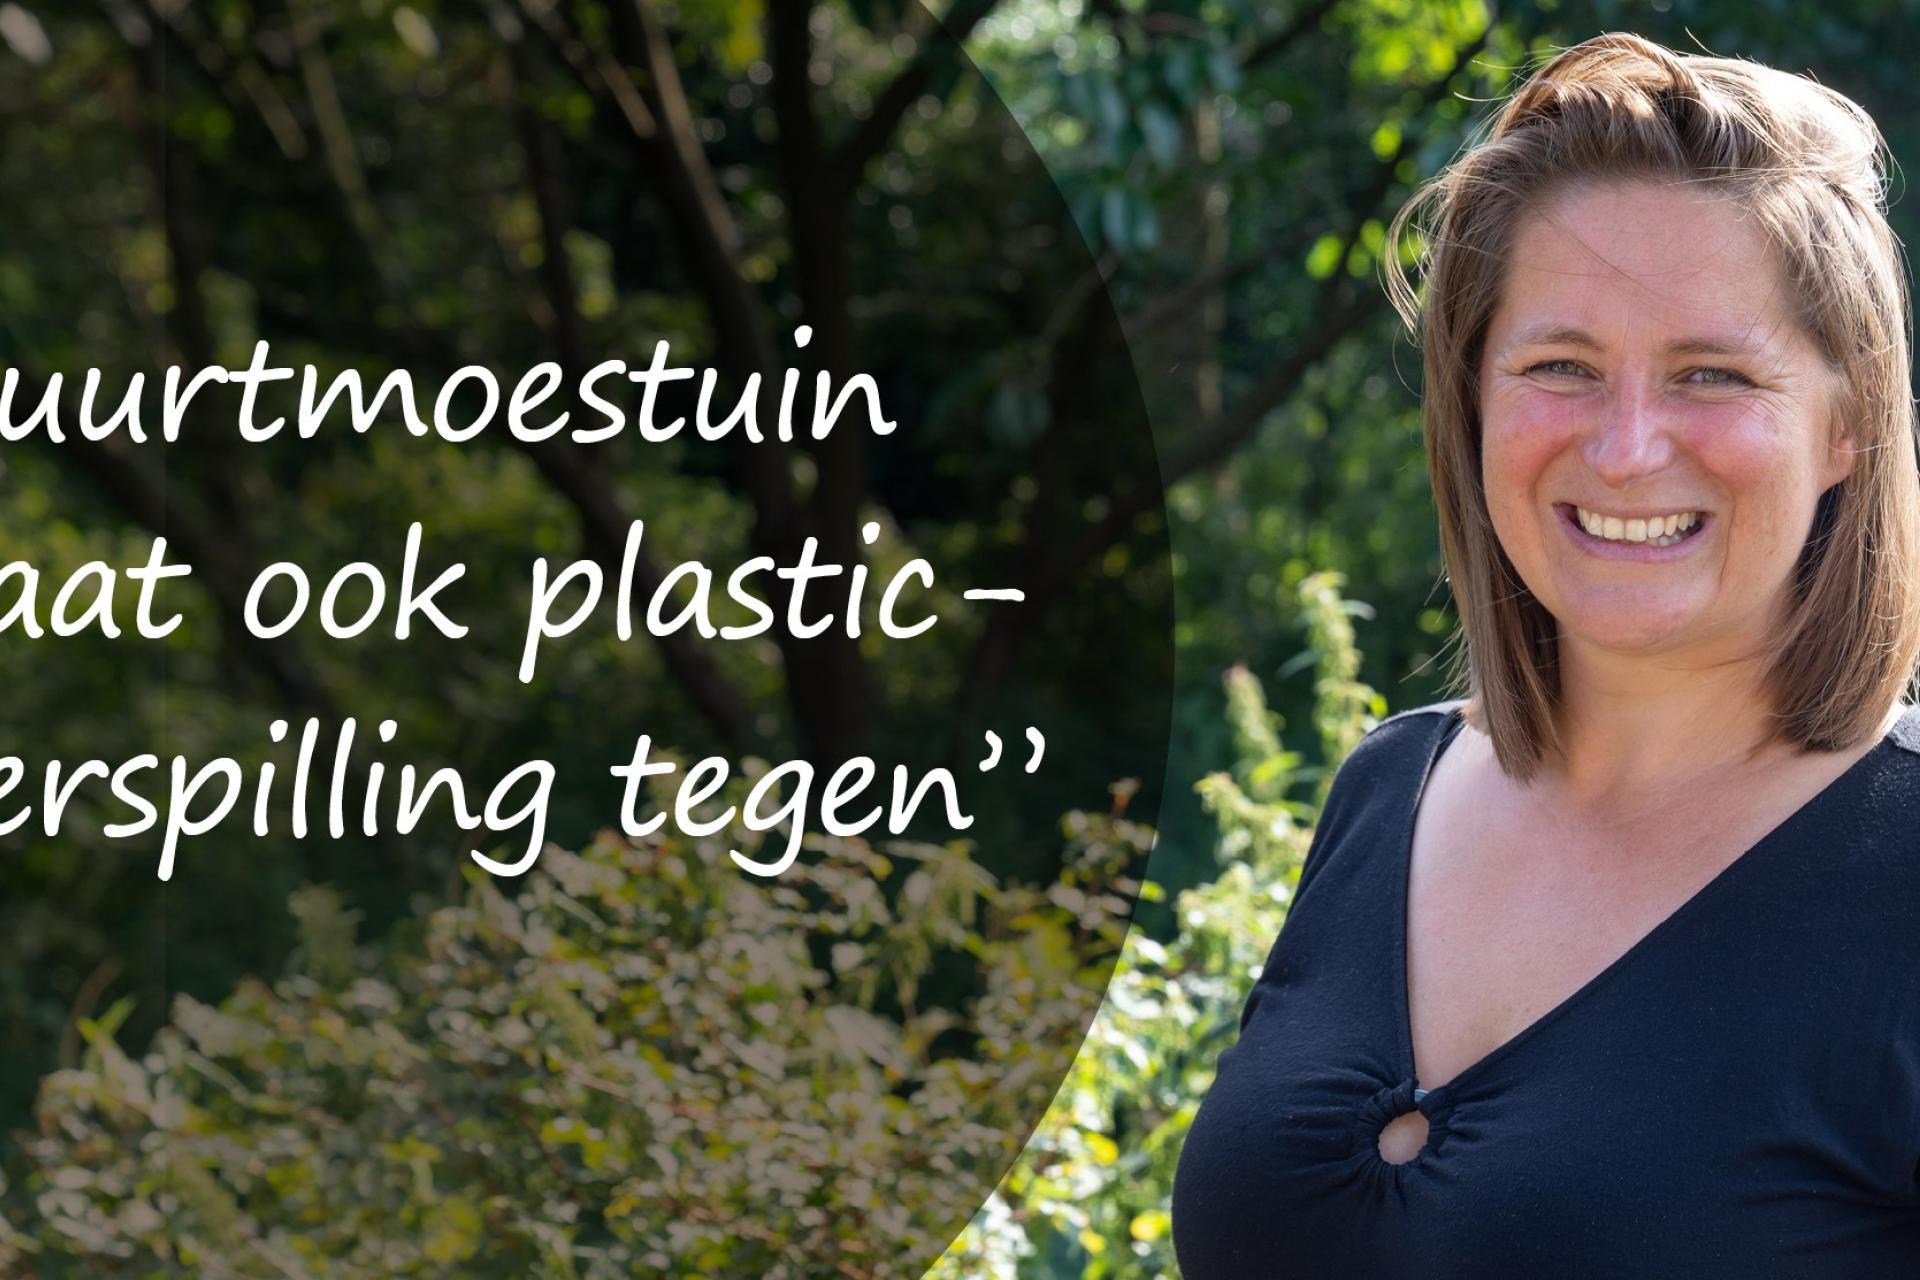 Duurzaam verhaal Jessica: 'Buurtmoestuin gaat ook plastic verspilling tegen.'